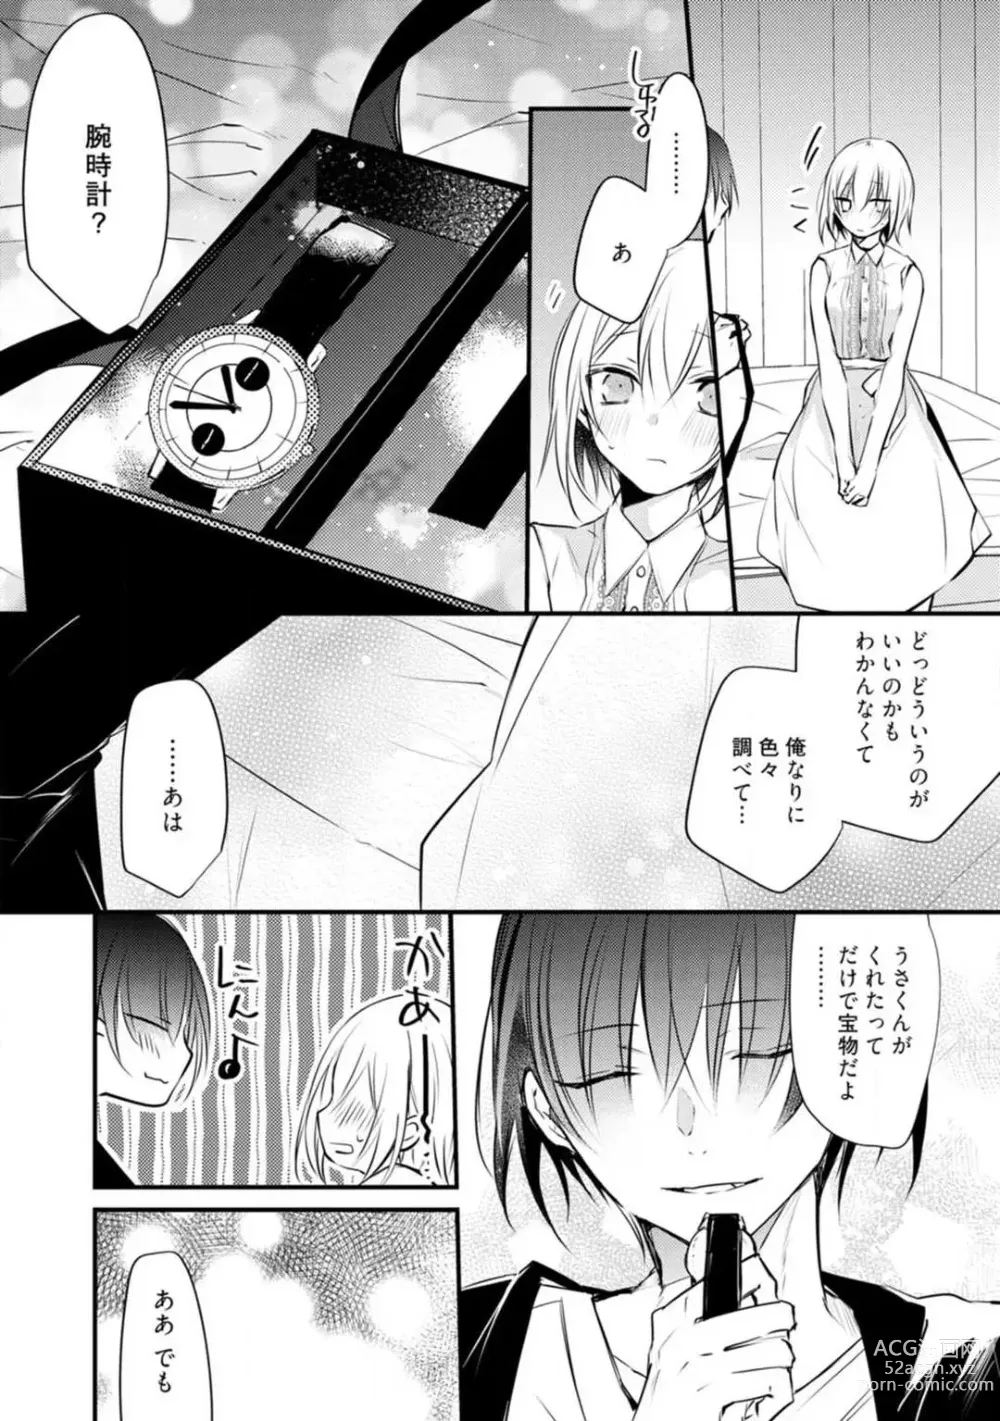 Page 397 of manga Change Drug 1-12